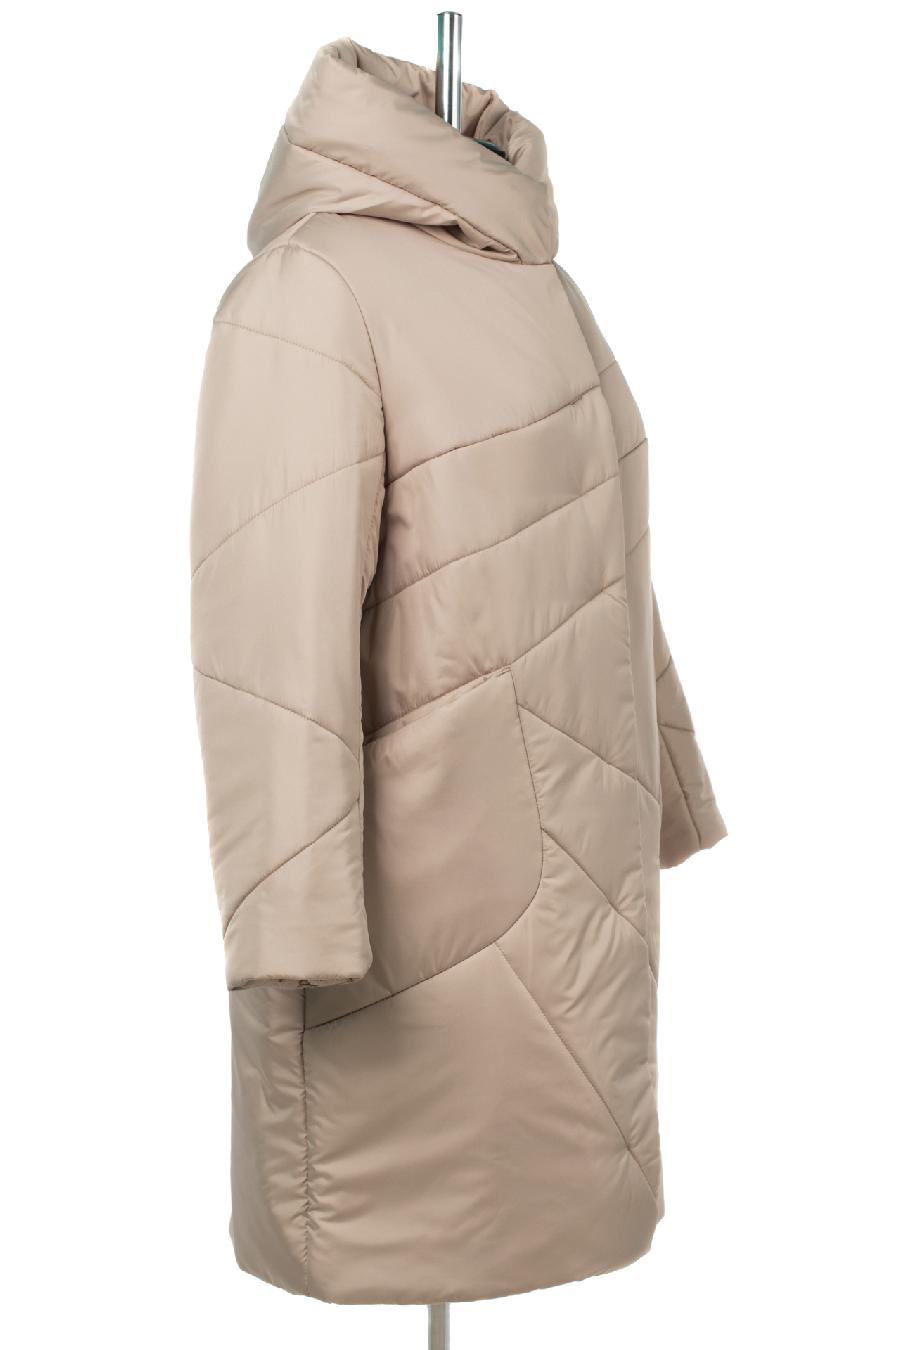 05-1992 Куртка женская зимняя (синтепон 300) Плащевка бежевый